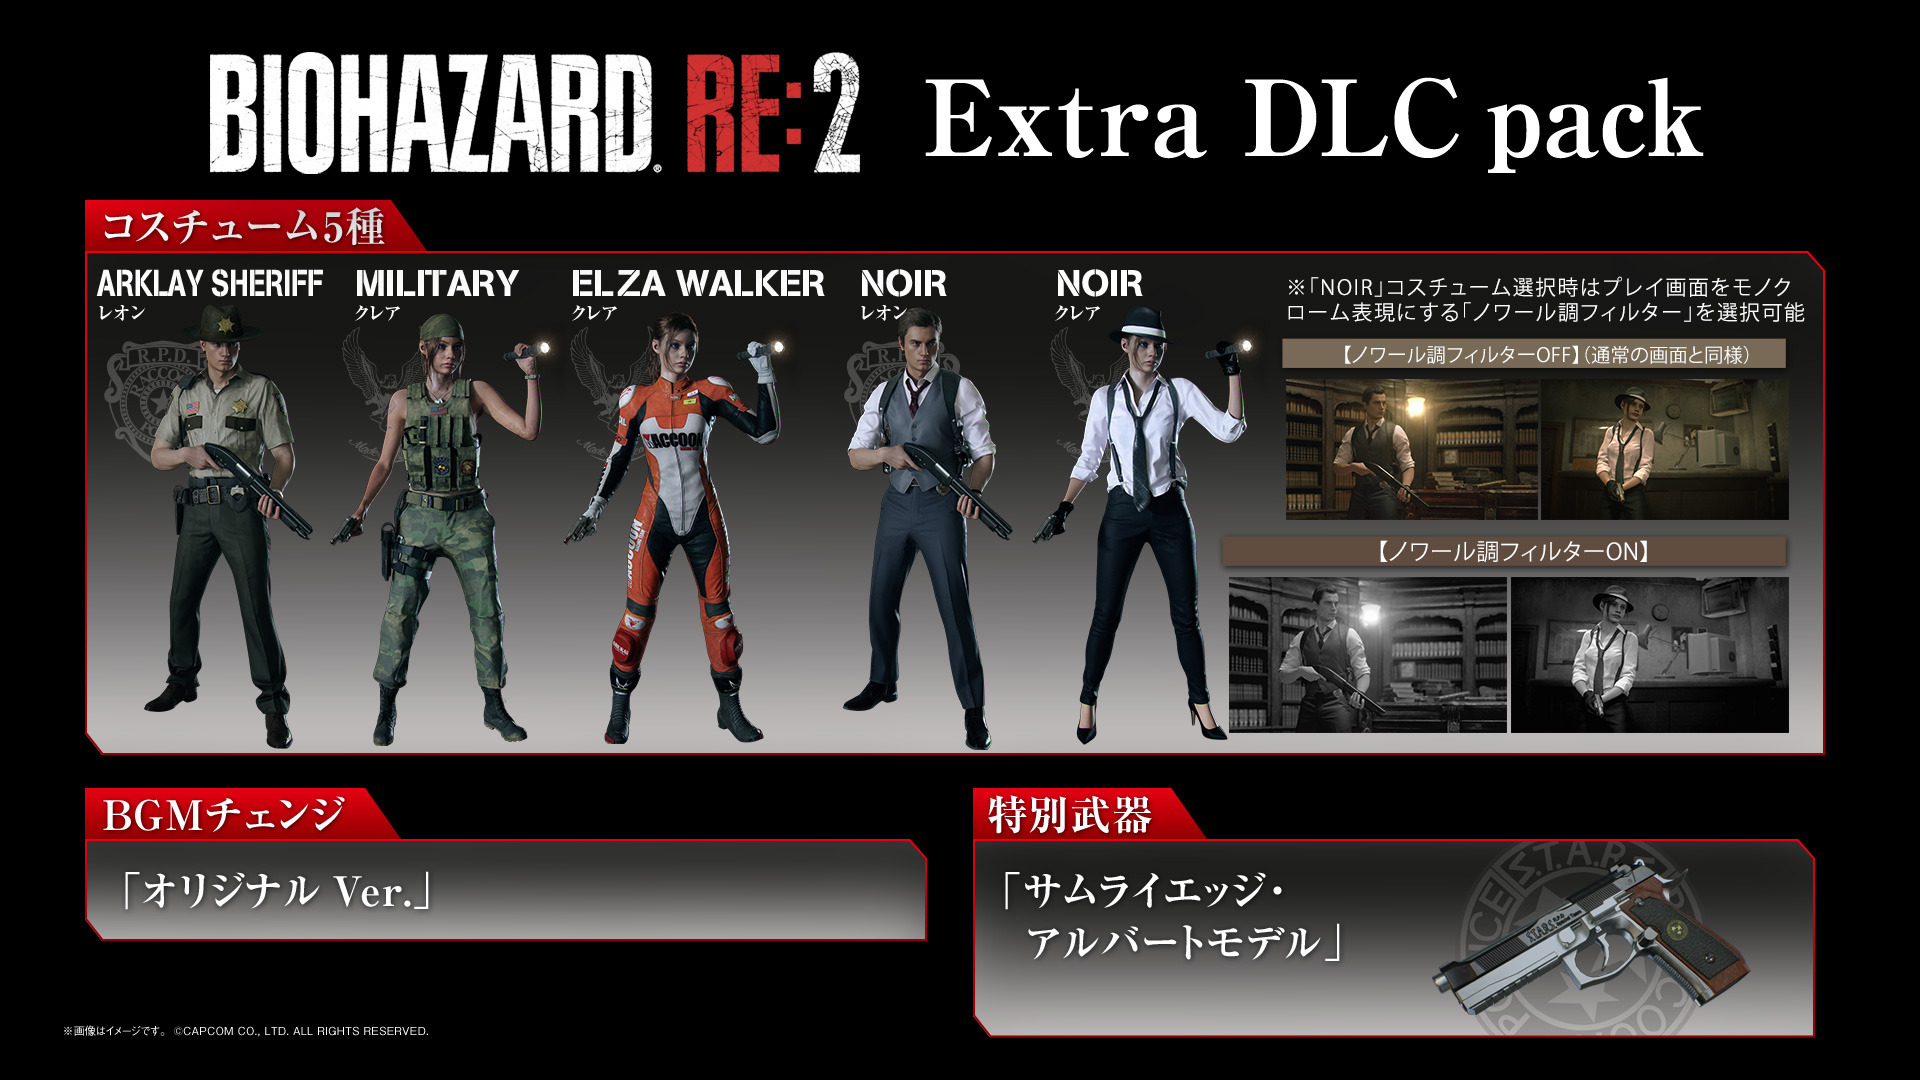 バイオハザード RE:2』「Extra DLC pack」には幻の「エルザ